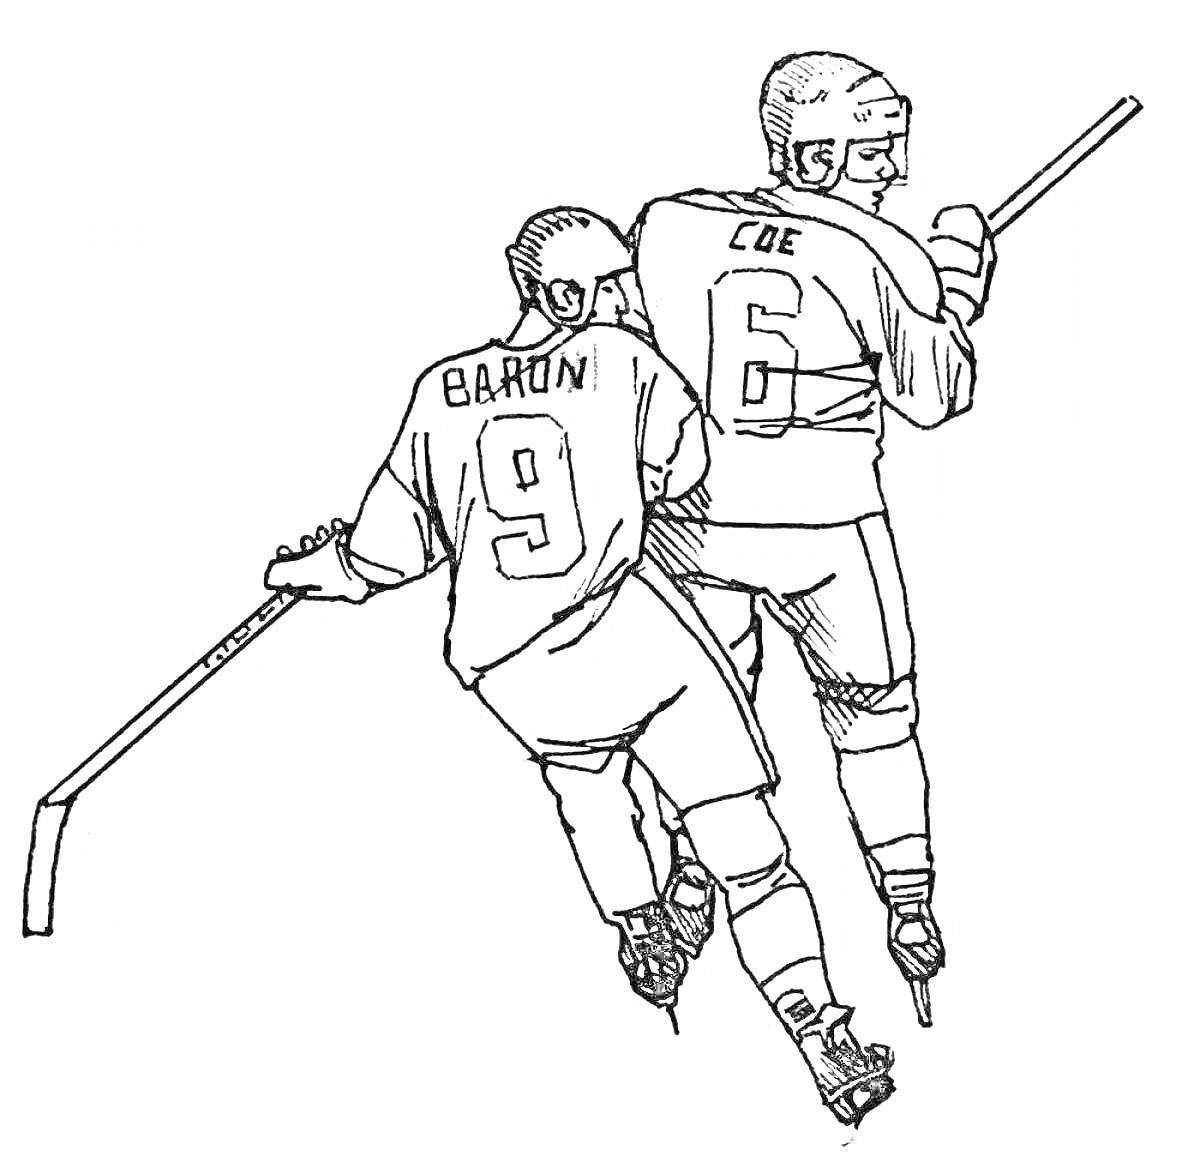 Два хоккеиста в защитной экипировке, держащие клюшки, играют в хоккей. Номера и фамилии игроков на форме: 9 - Baron и 6 - Coe.